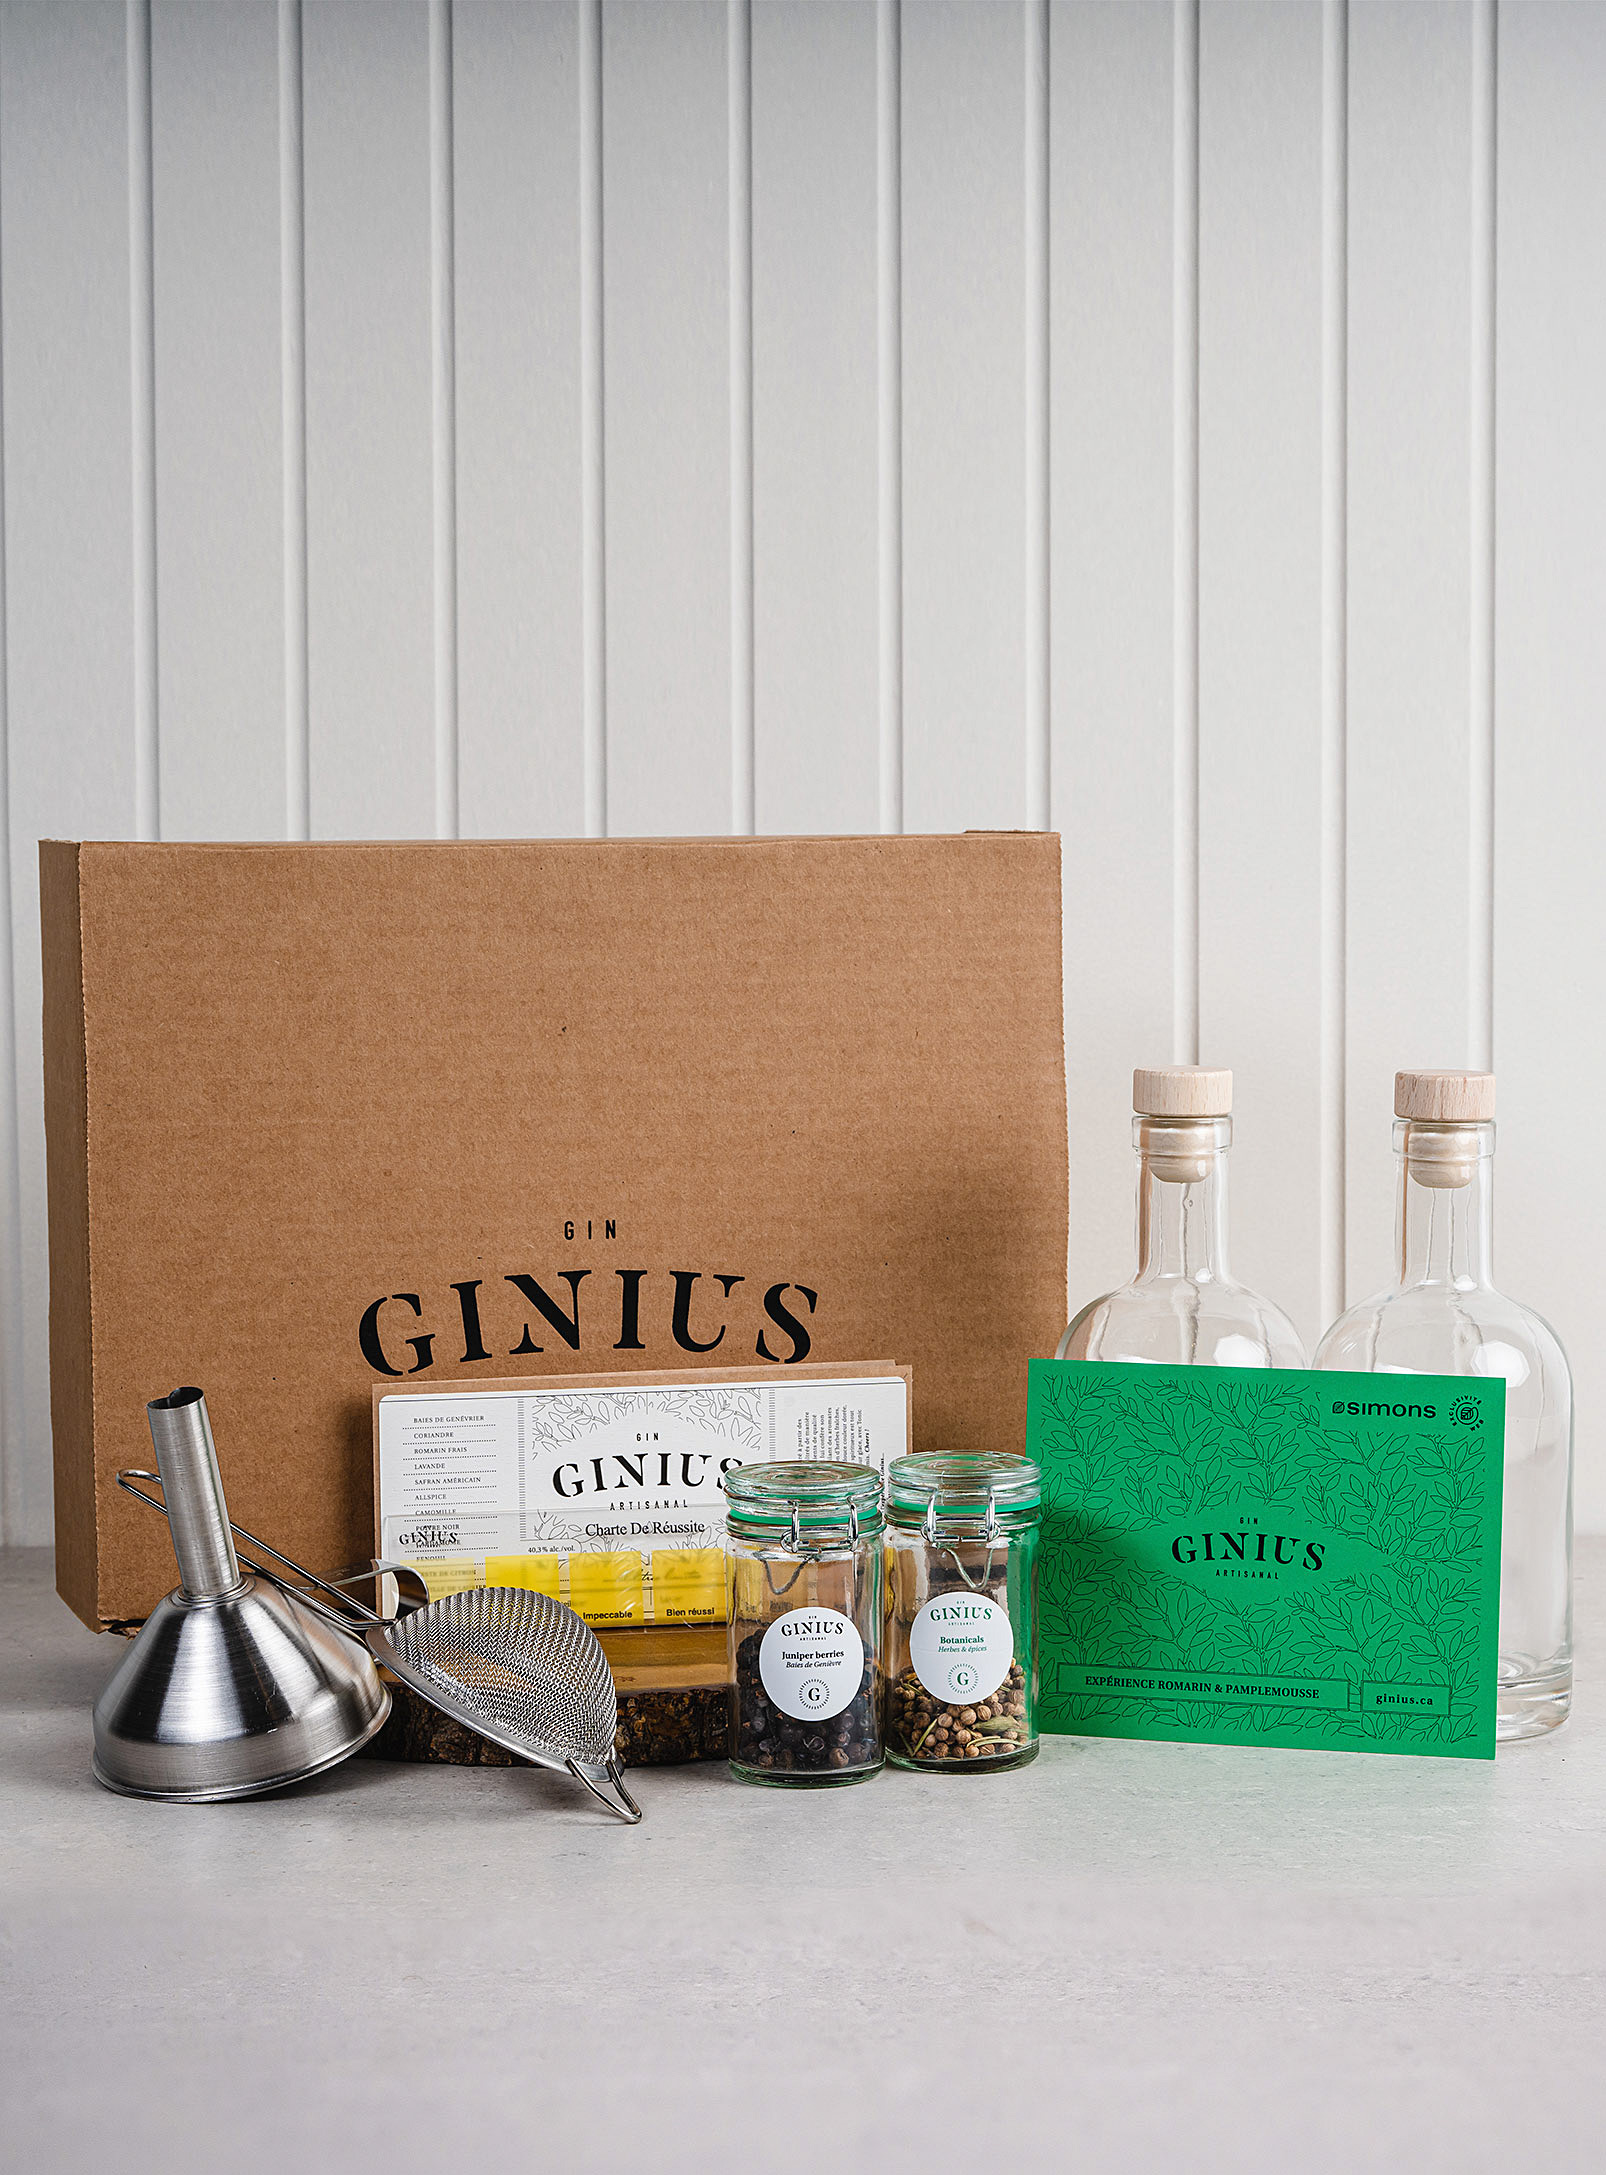 Ginius - Homemade gin kit